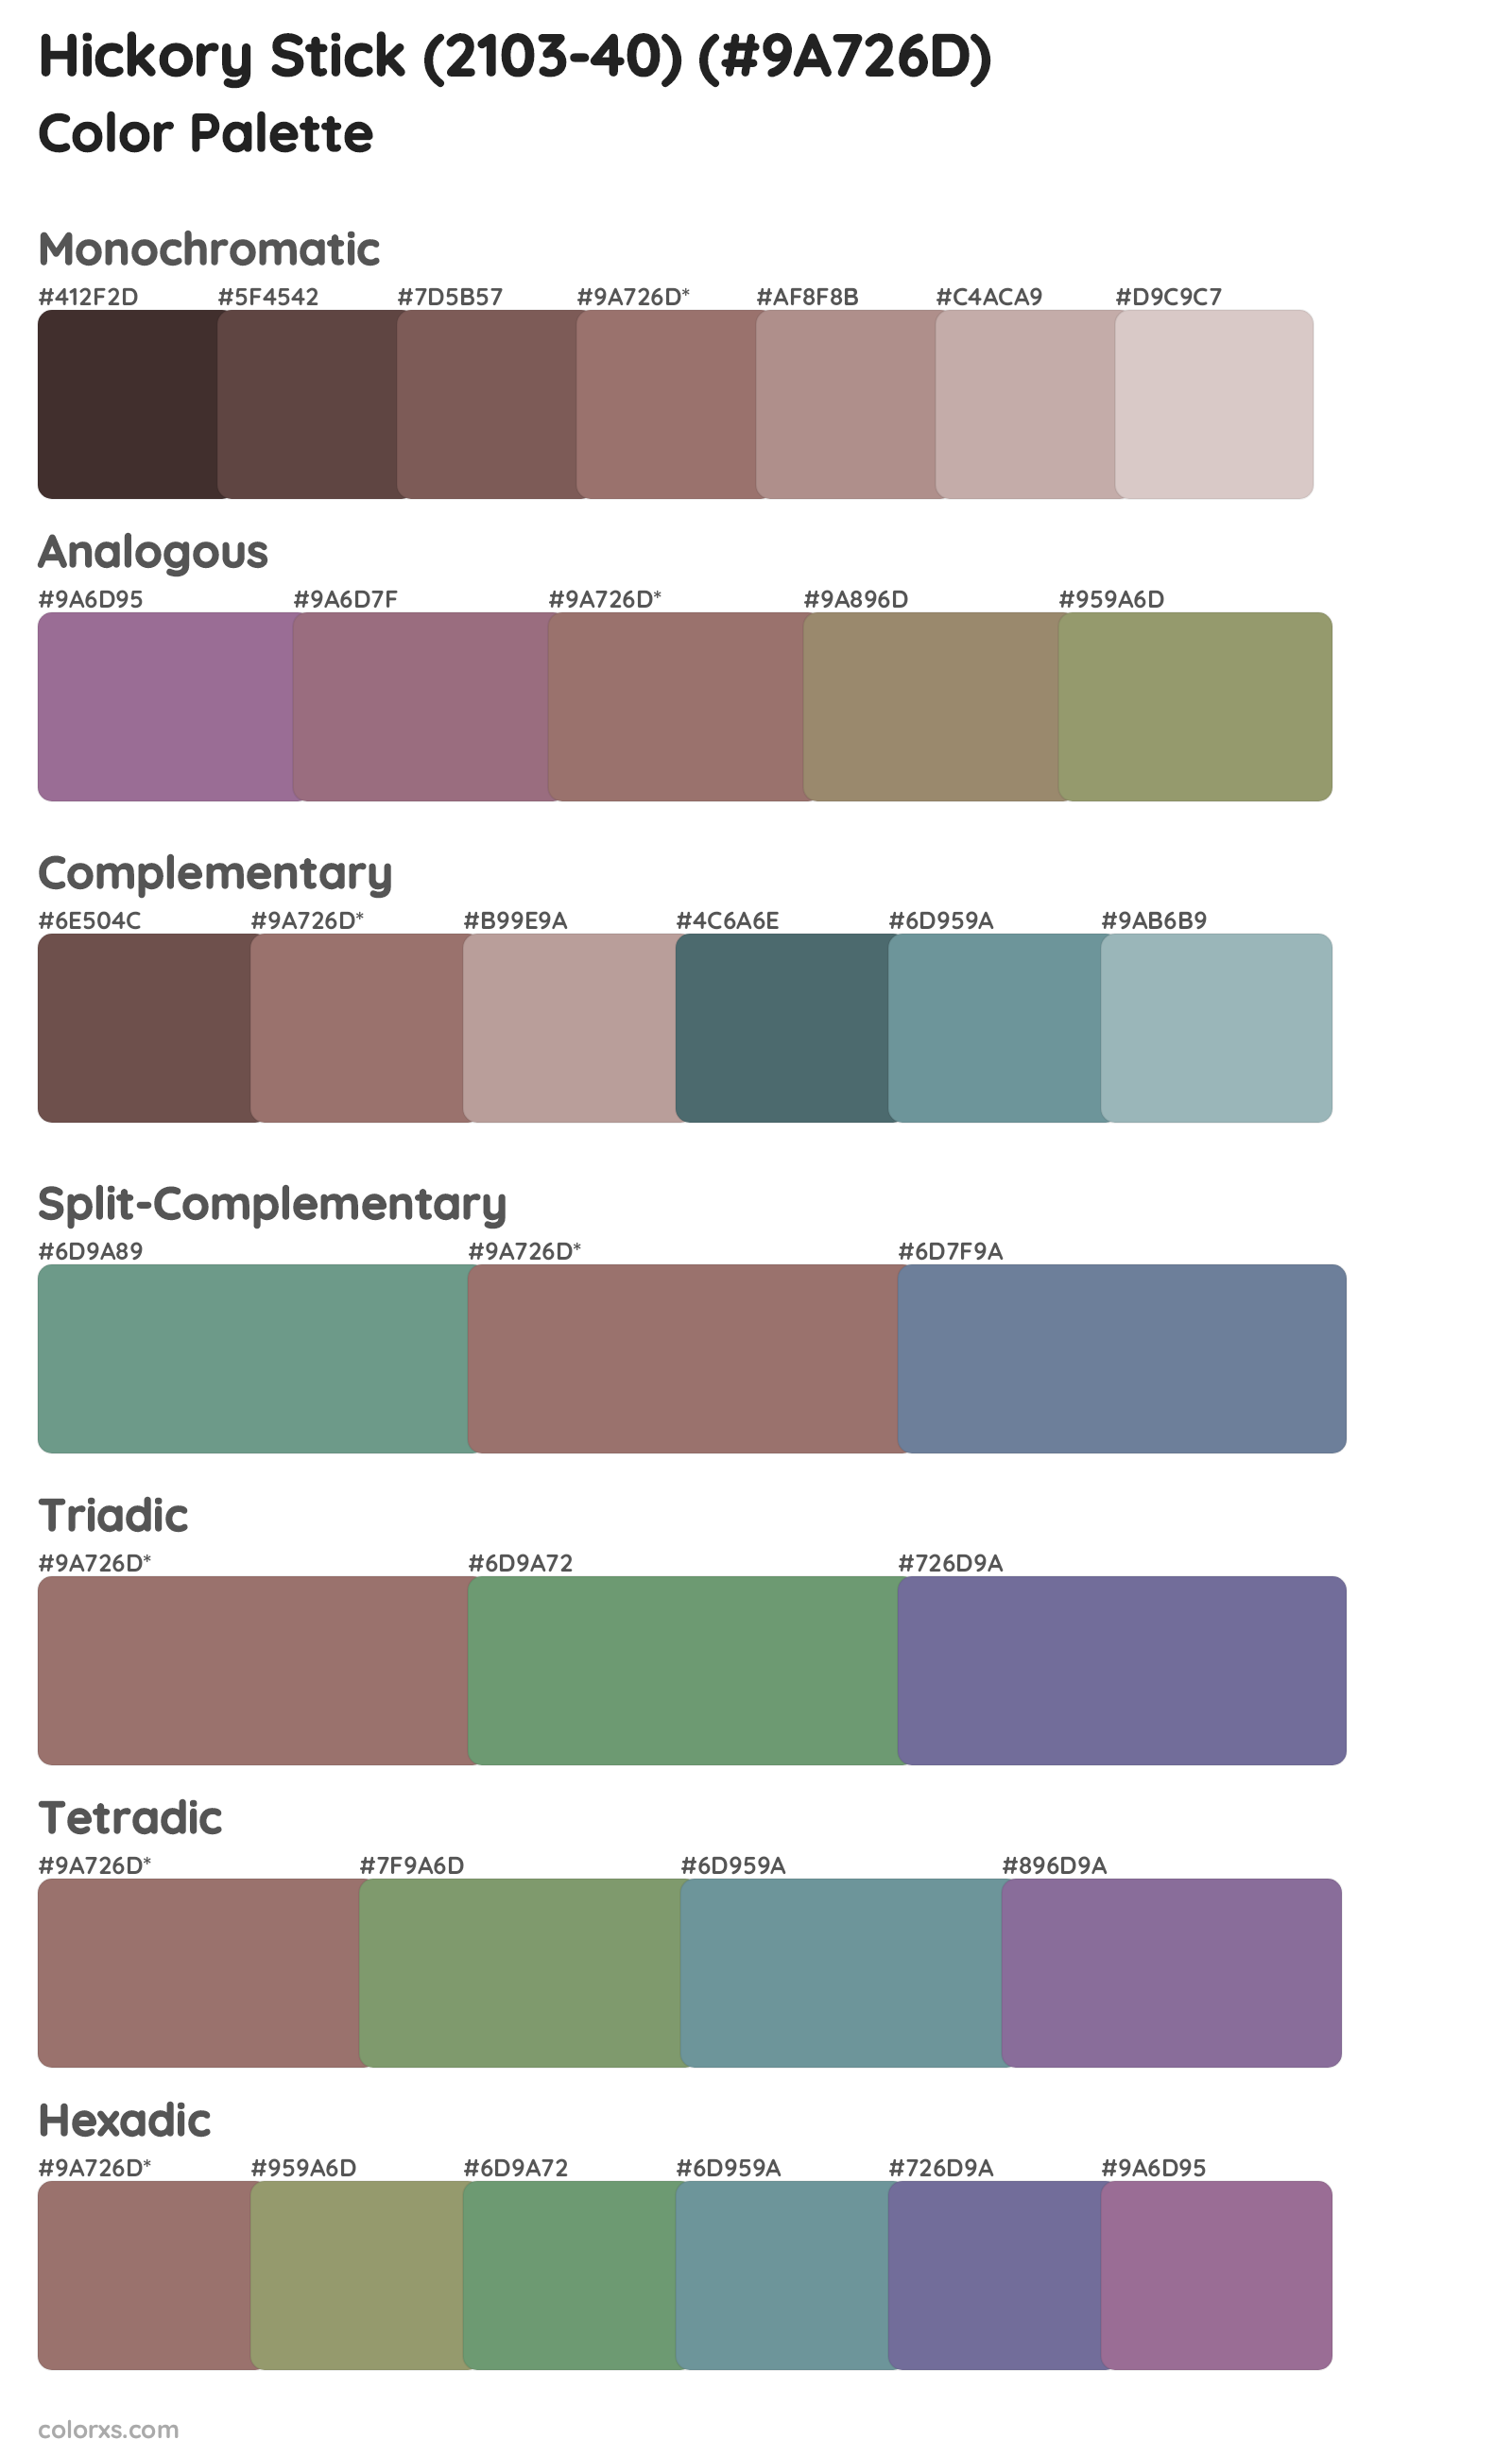 Hickory Stick (2103-40) Color Scheme Palettes